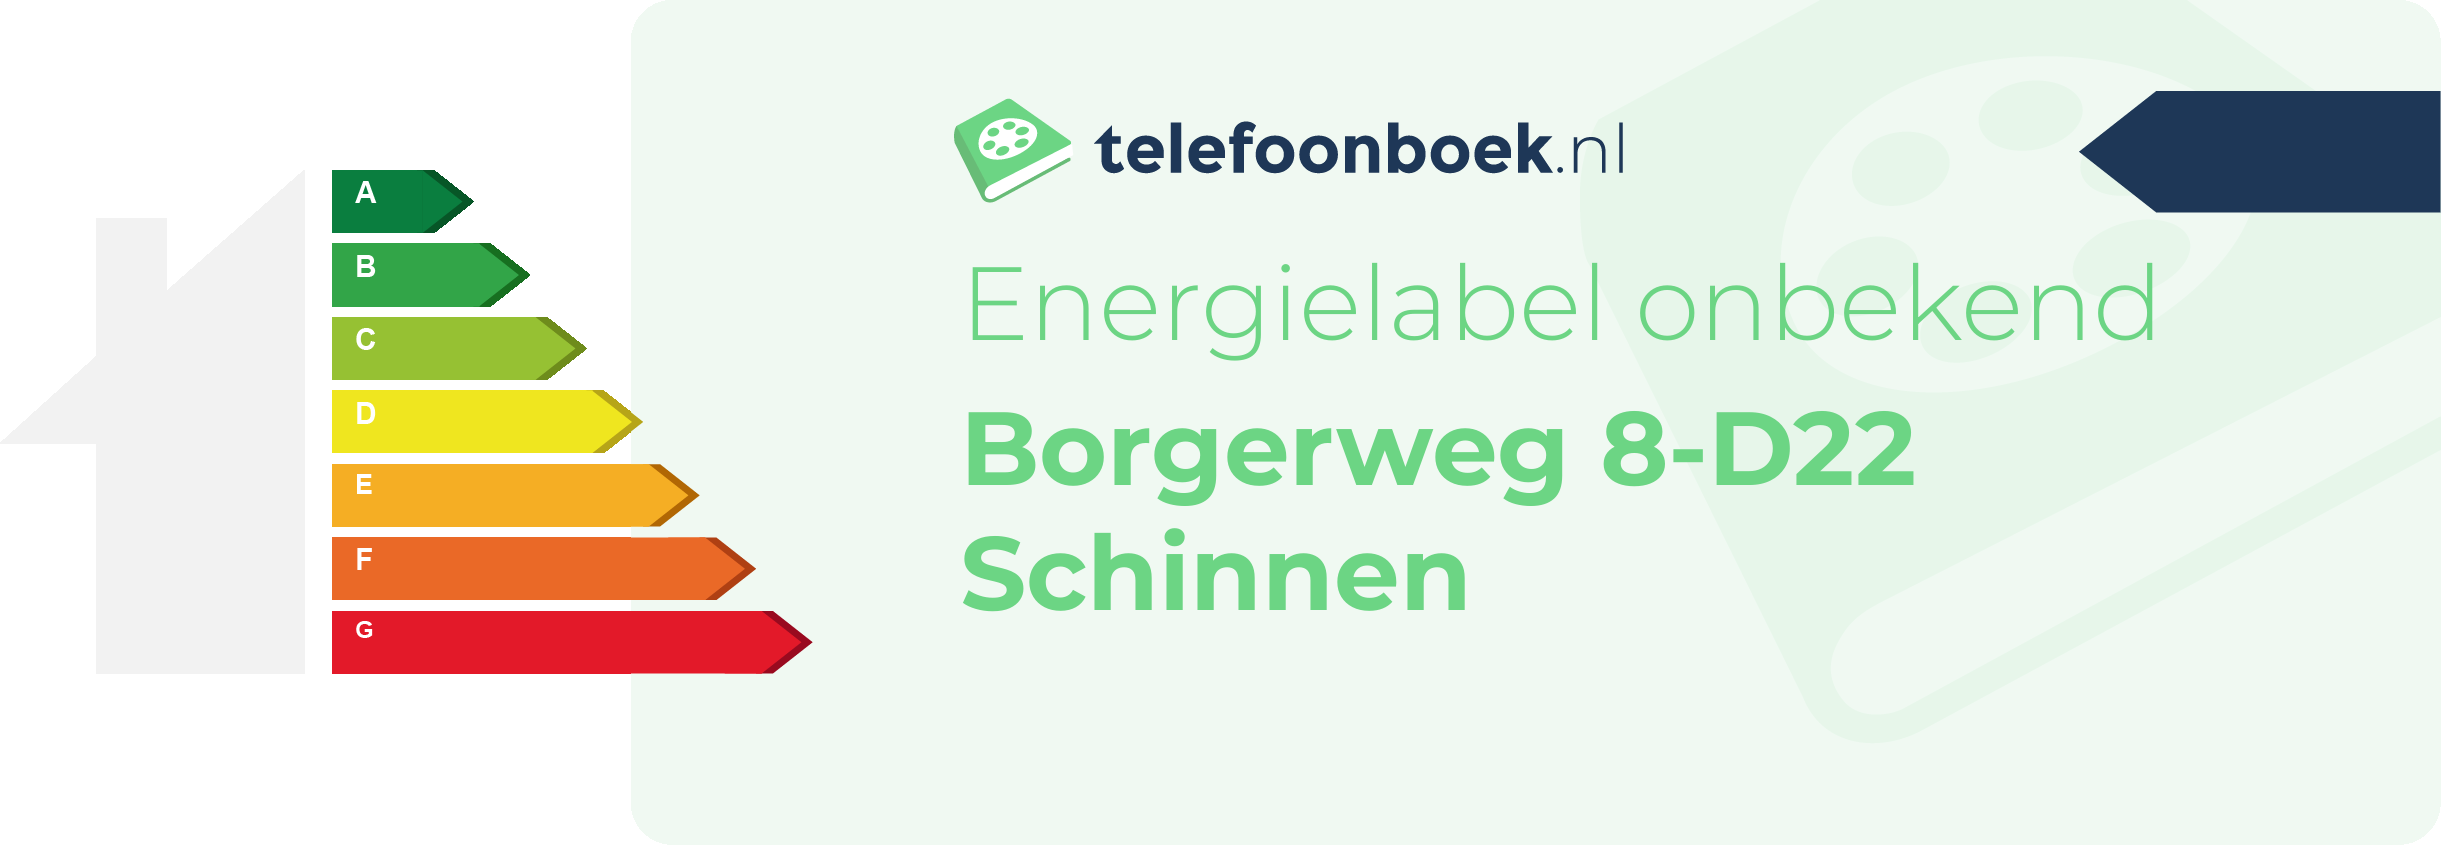 Energielabel Borgerweg 8-D22 Schinnen